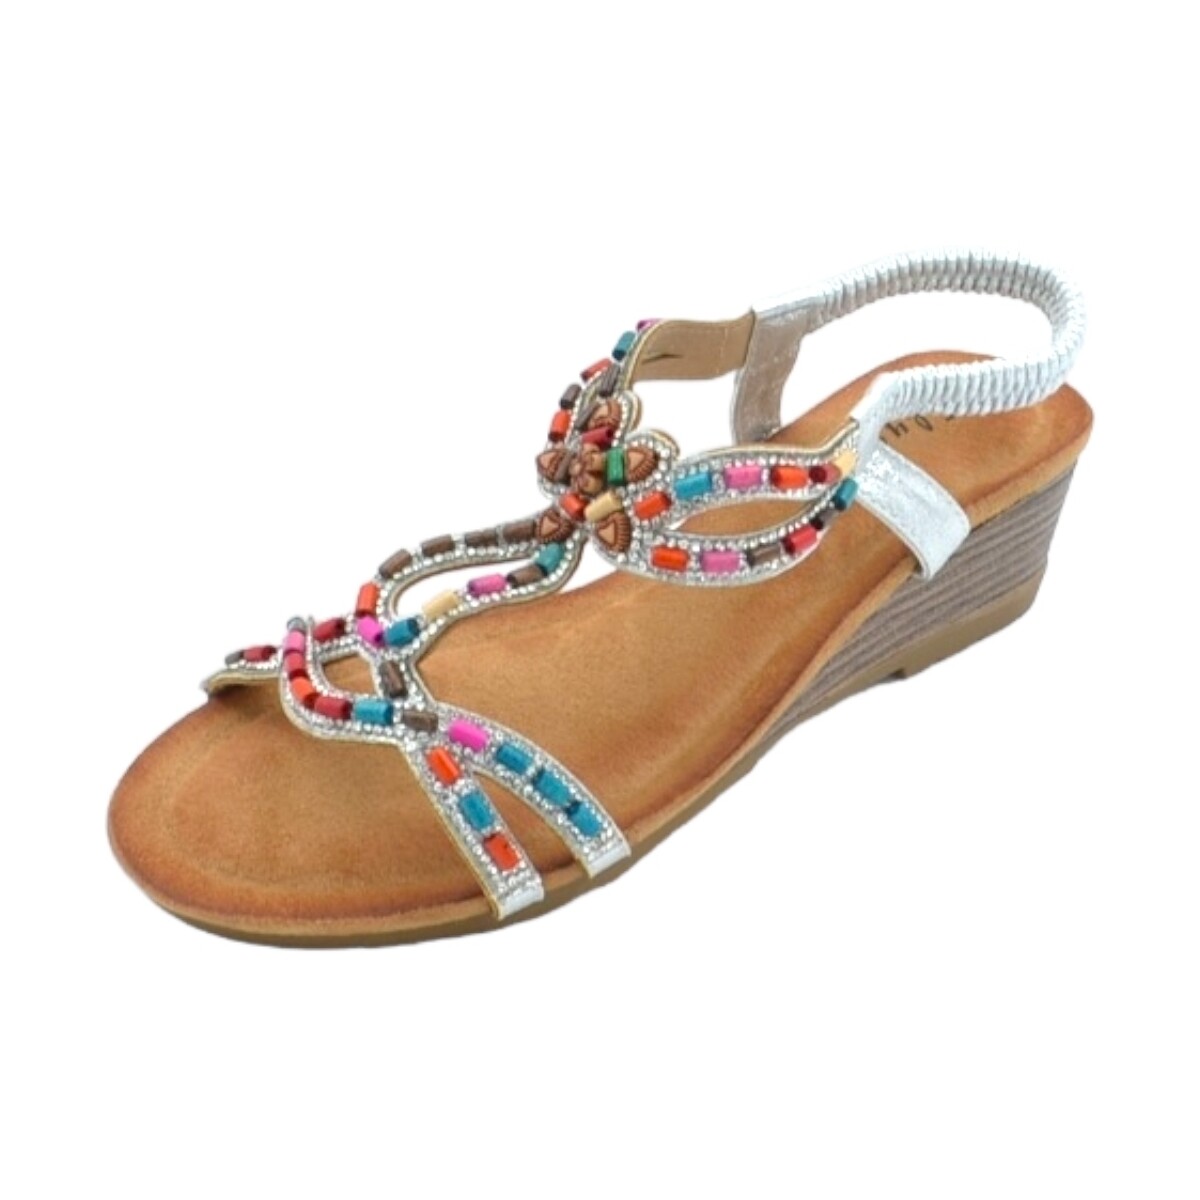 Scarpe Donna Tronchetti Malu Shoes Sandalo gioiello argento pietre colorate tacco zeppa 3cm solett Multicolore